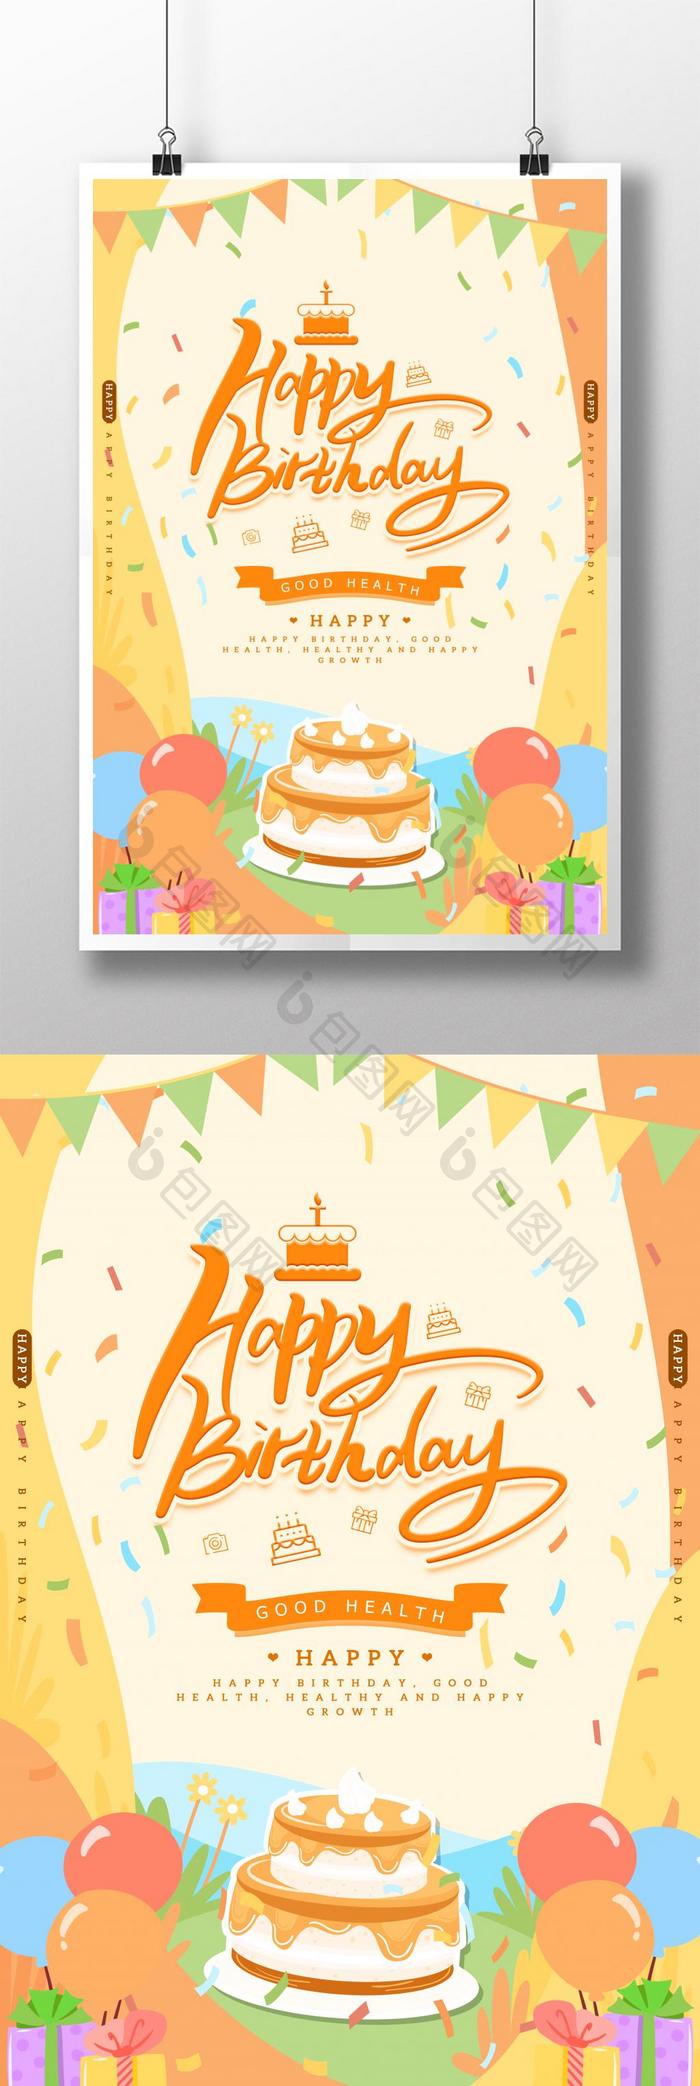 创意简单生日快乐海报 图片下载 包图网